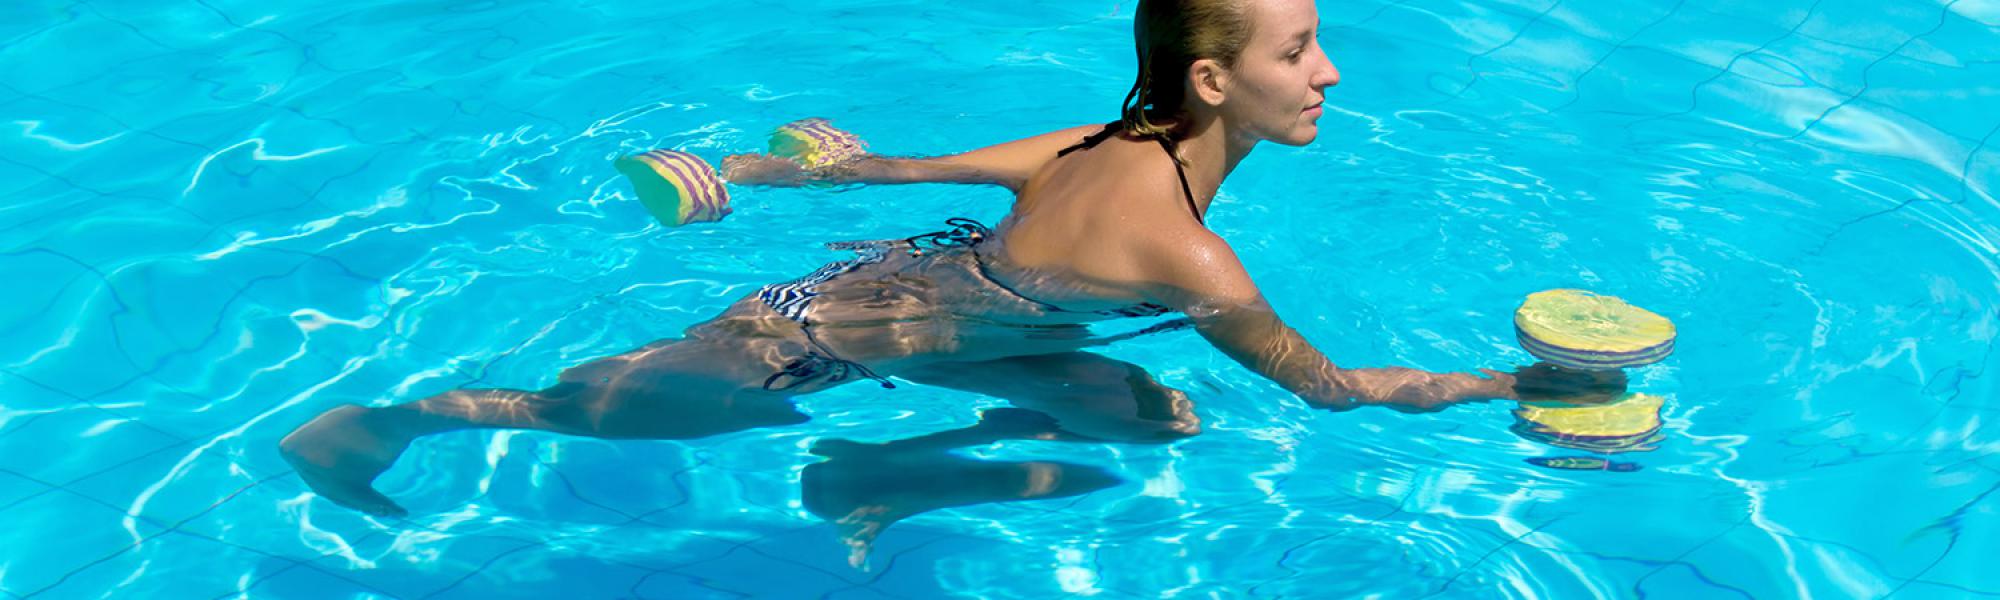 Φυσικοθεραπεία αθλήτριας στην πισίνα του φυσικοθεραπευτικού μας κέντρου στο Πικέρμι με τη χρήση εξειδικευμένων οργάνων γυμναστικής.